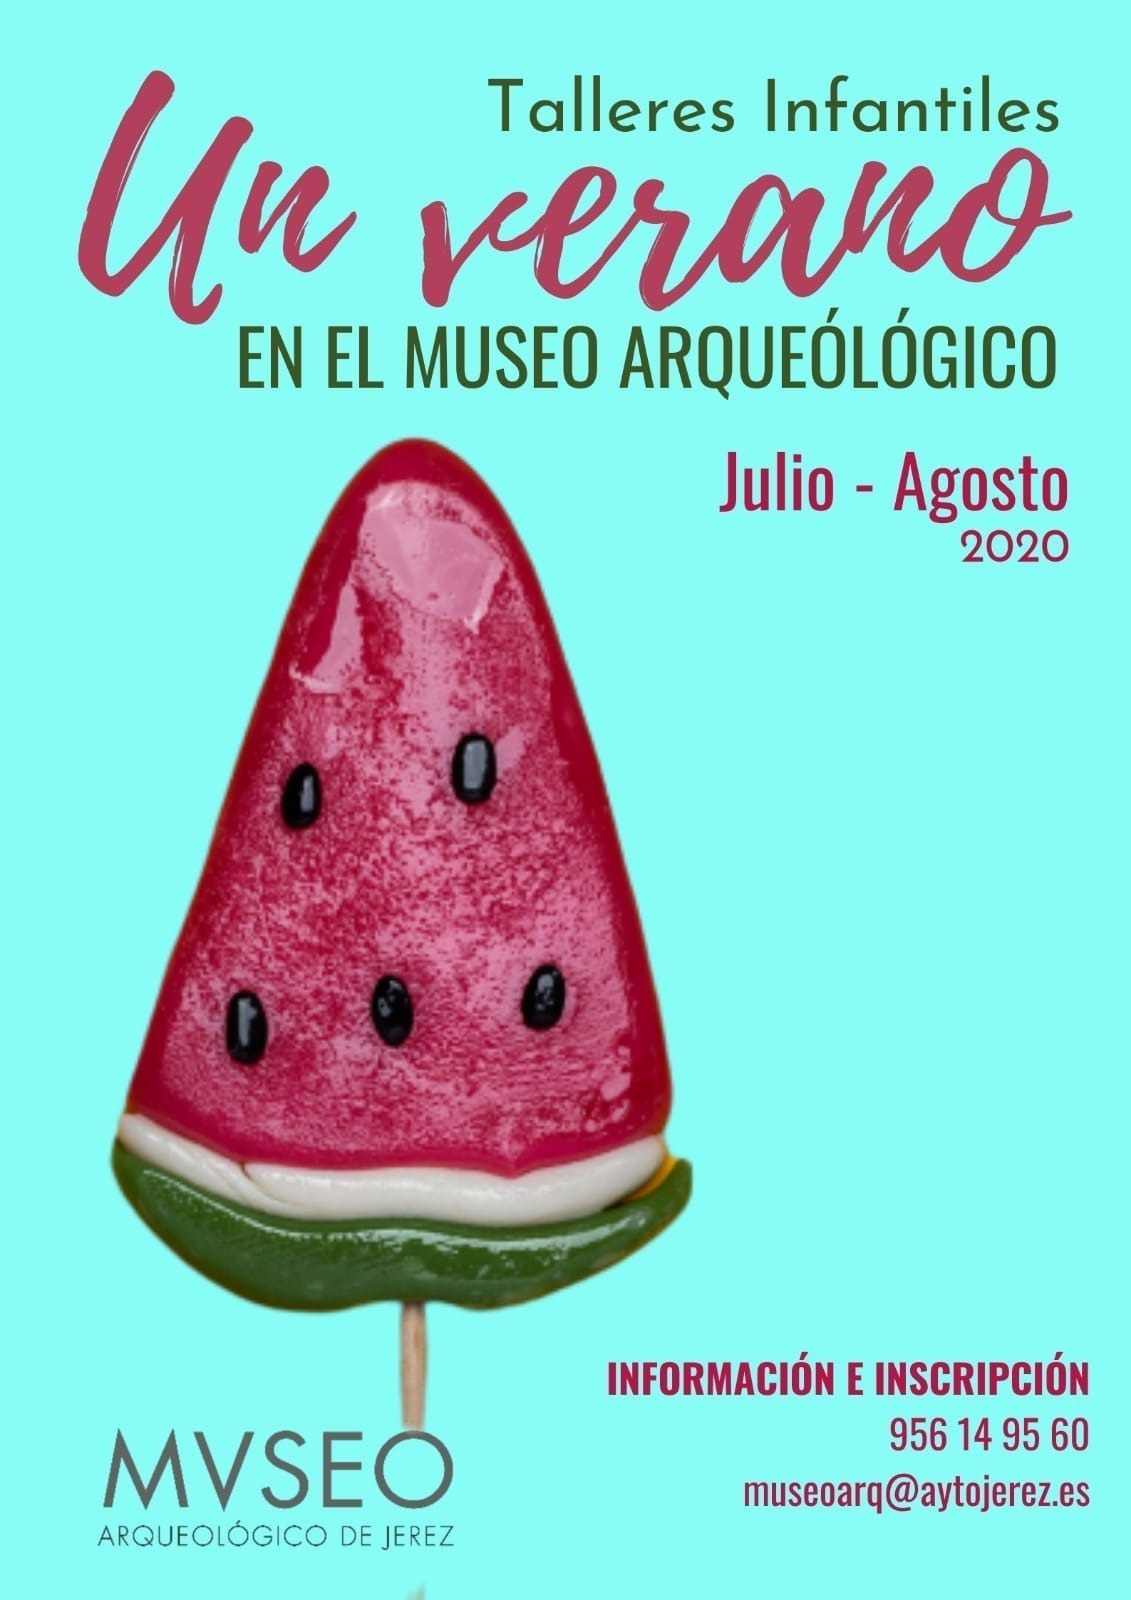 Museo Arqueológico Verano 2020 (Jerez de la Frontera)